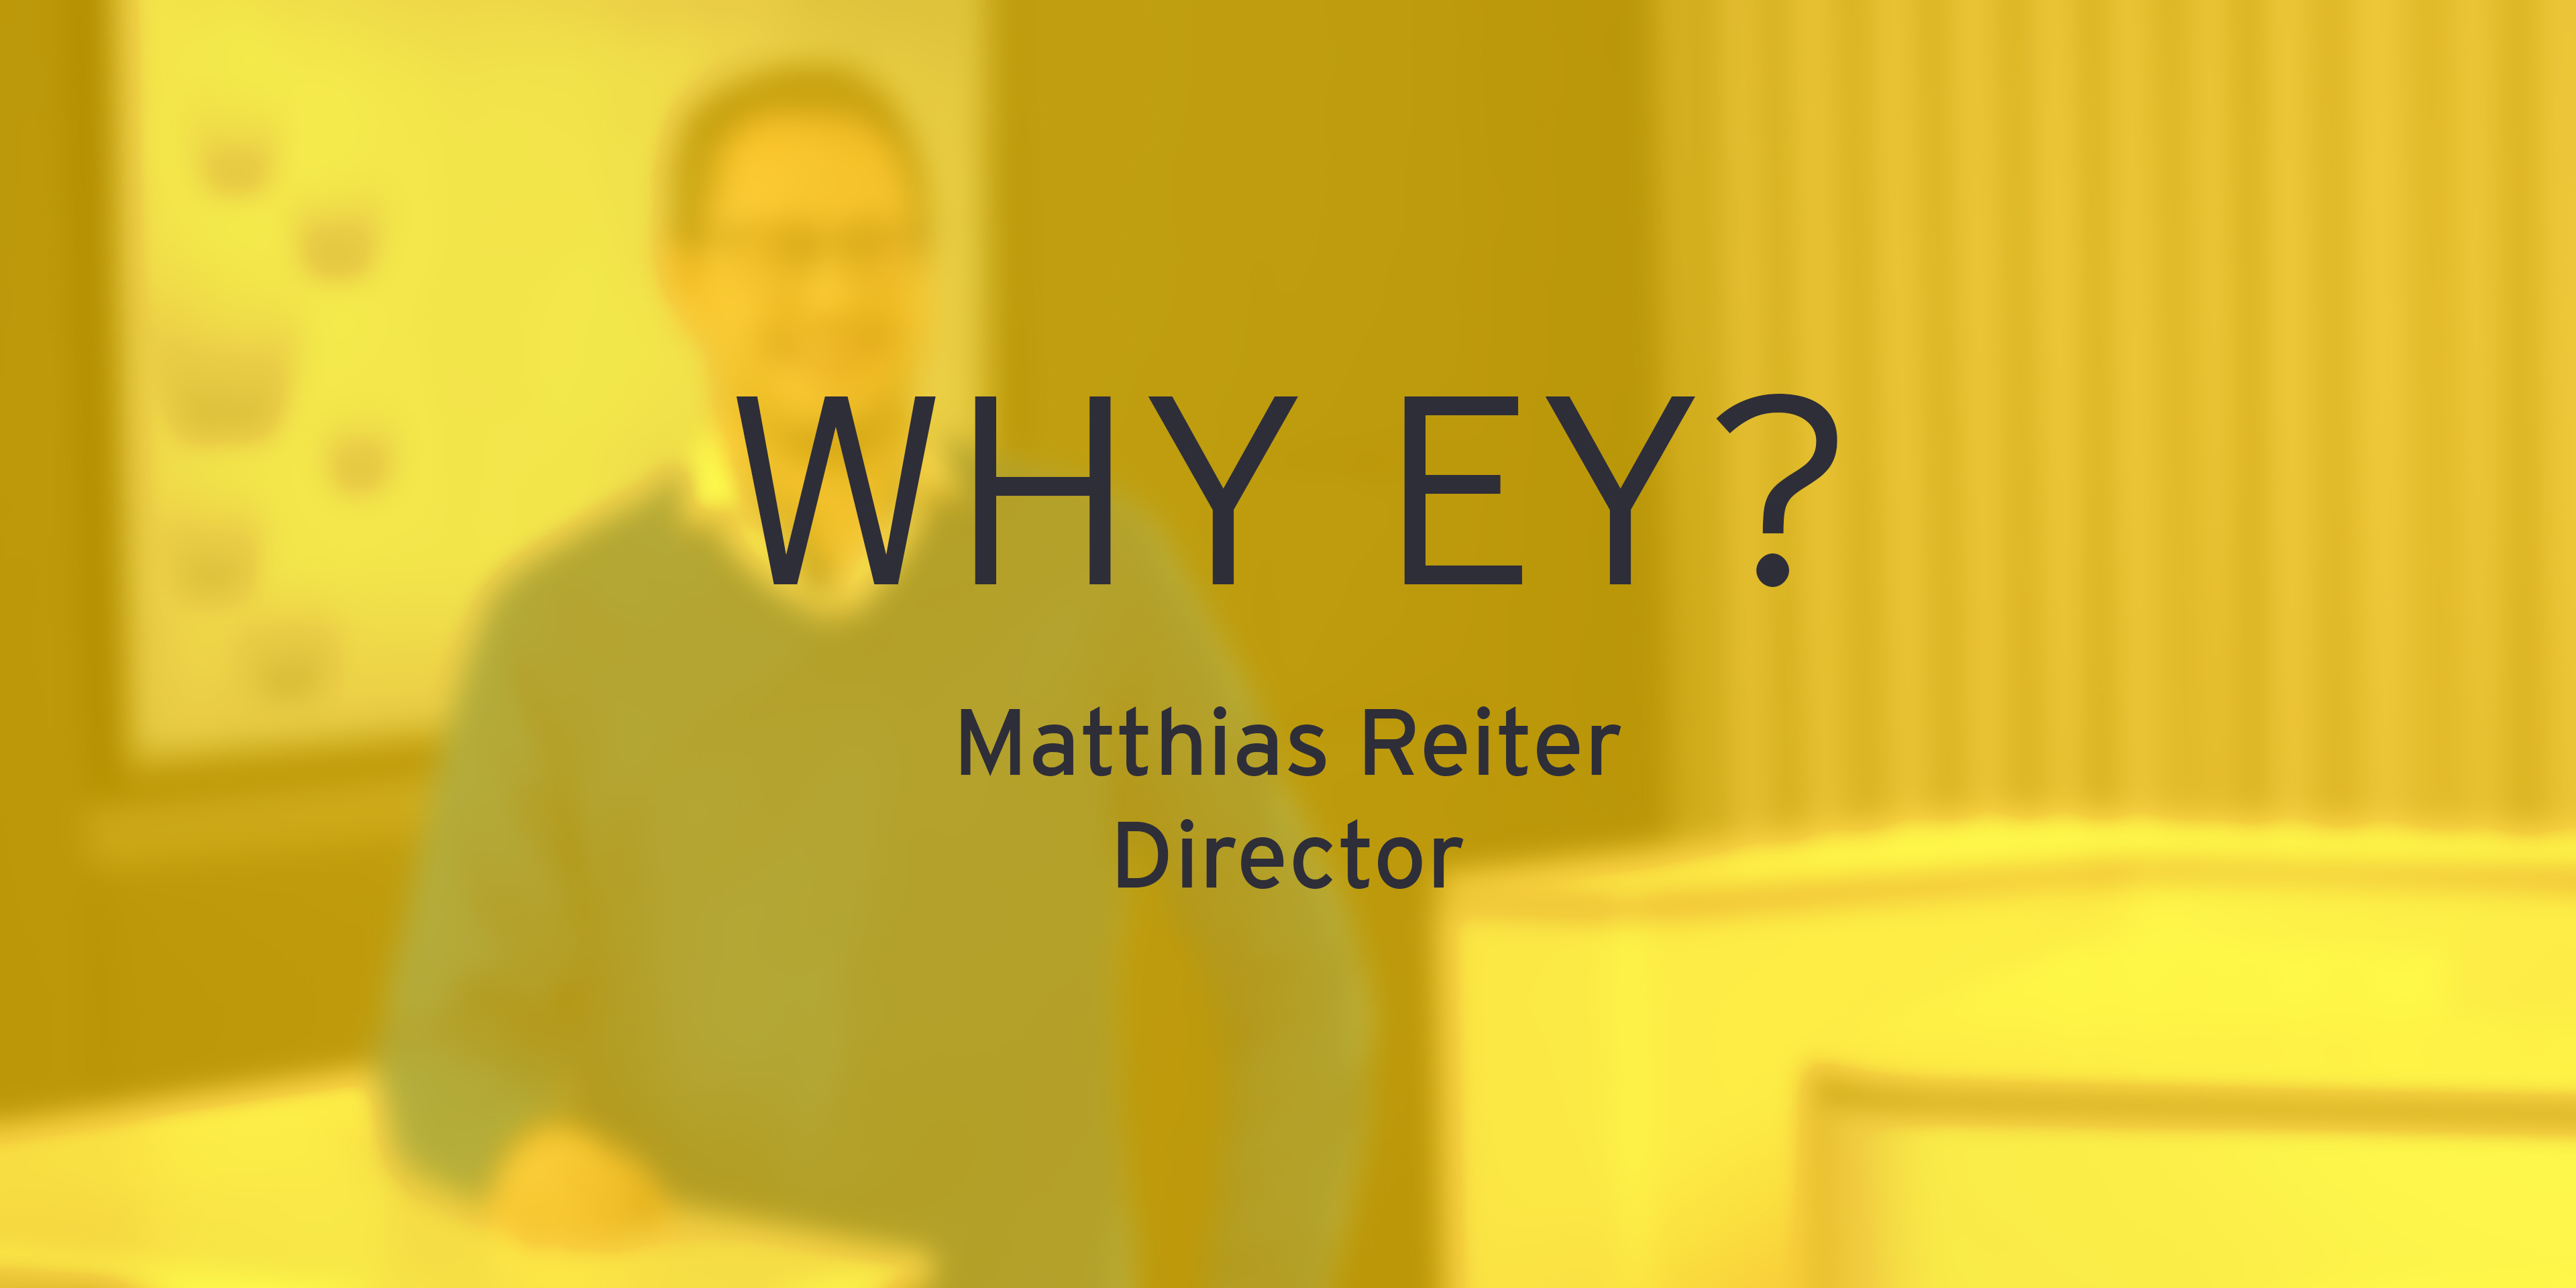 Matthias Reiter über das Arbeiten bei EY